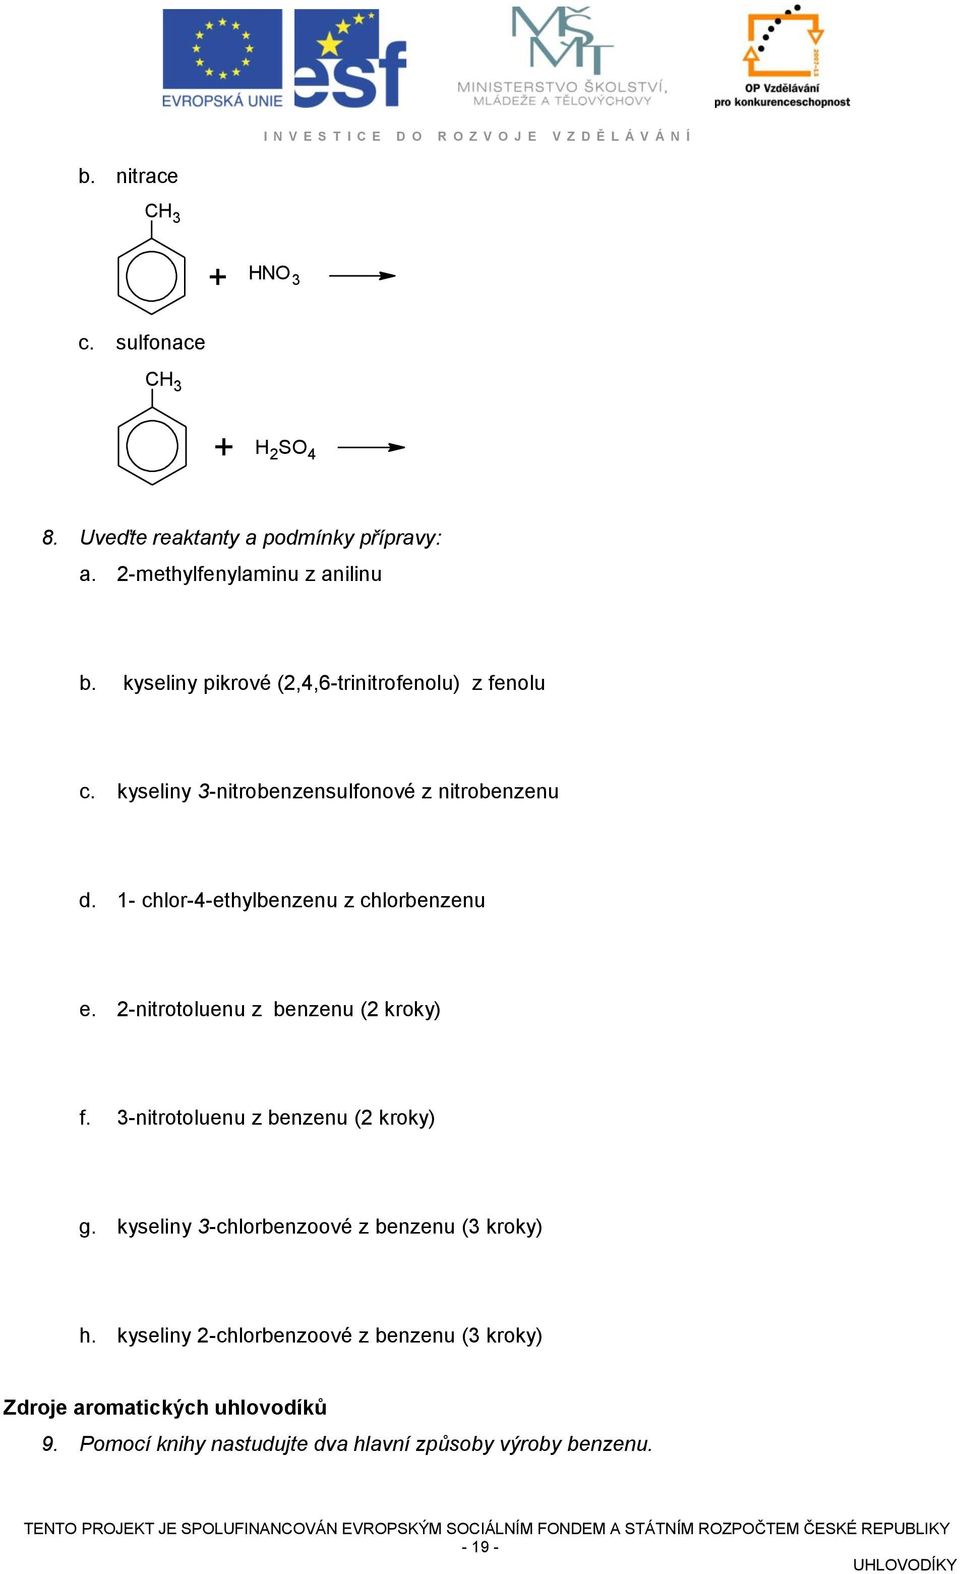 1- chlor-4-ethylbenzenu z chlorbenzenu e. 2-nitrotoluenu z benzenu (2 kroky) f. 3-nitrotoluenu z benzenu (2 kroky) g.